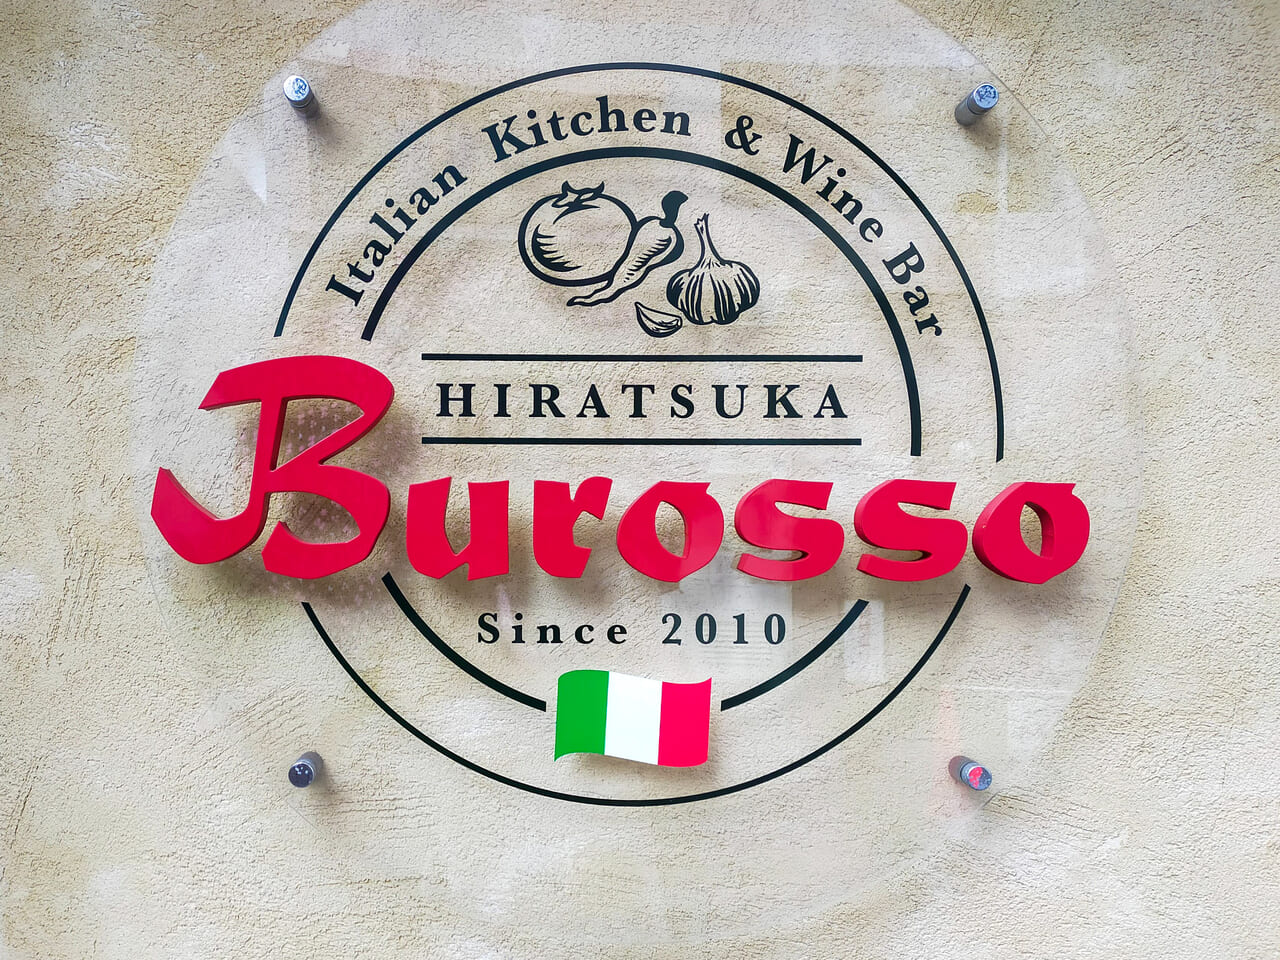 お肉料理やパスタが人気の「Hiratsuka Burosso（ブロッソ平塚店）」が12月30日（土）に閉店します。